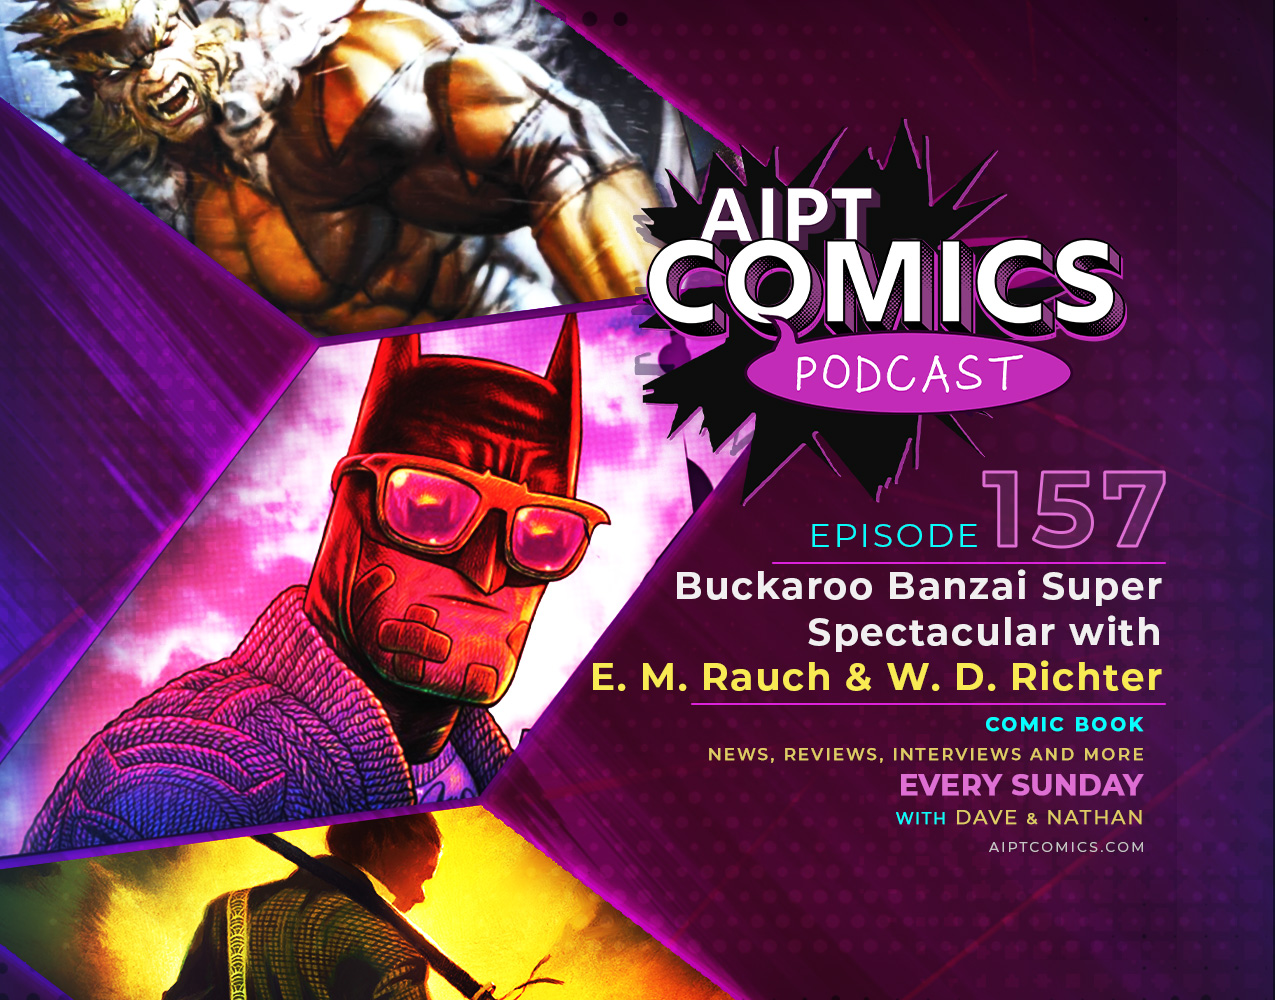 AIPT Comics Podcast Episode 157: Buckaroo Banzai Super Spectacular with Earl Mac Rauch & W.D. Richter